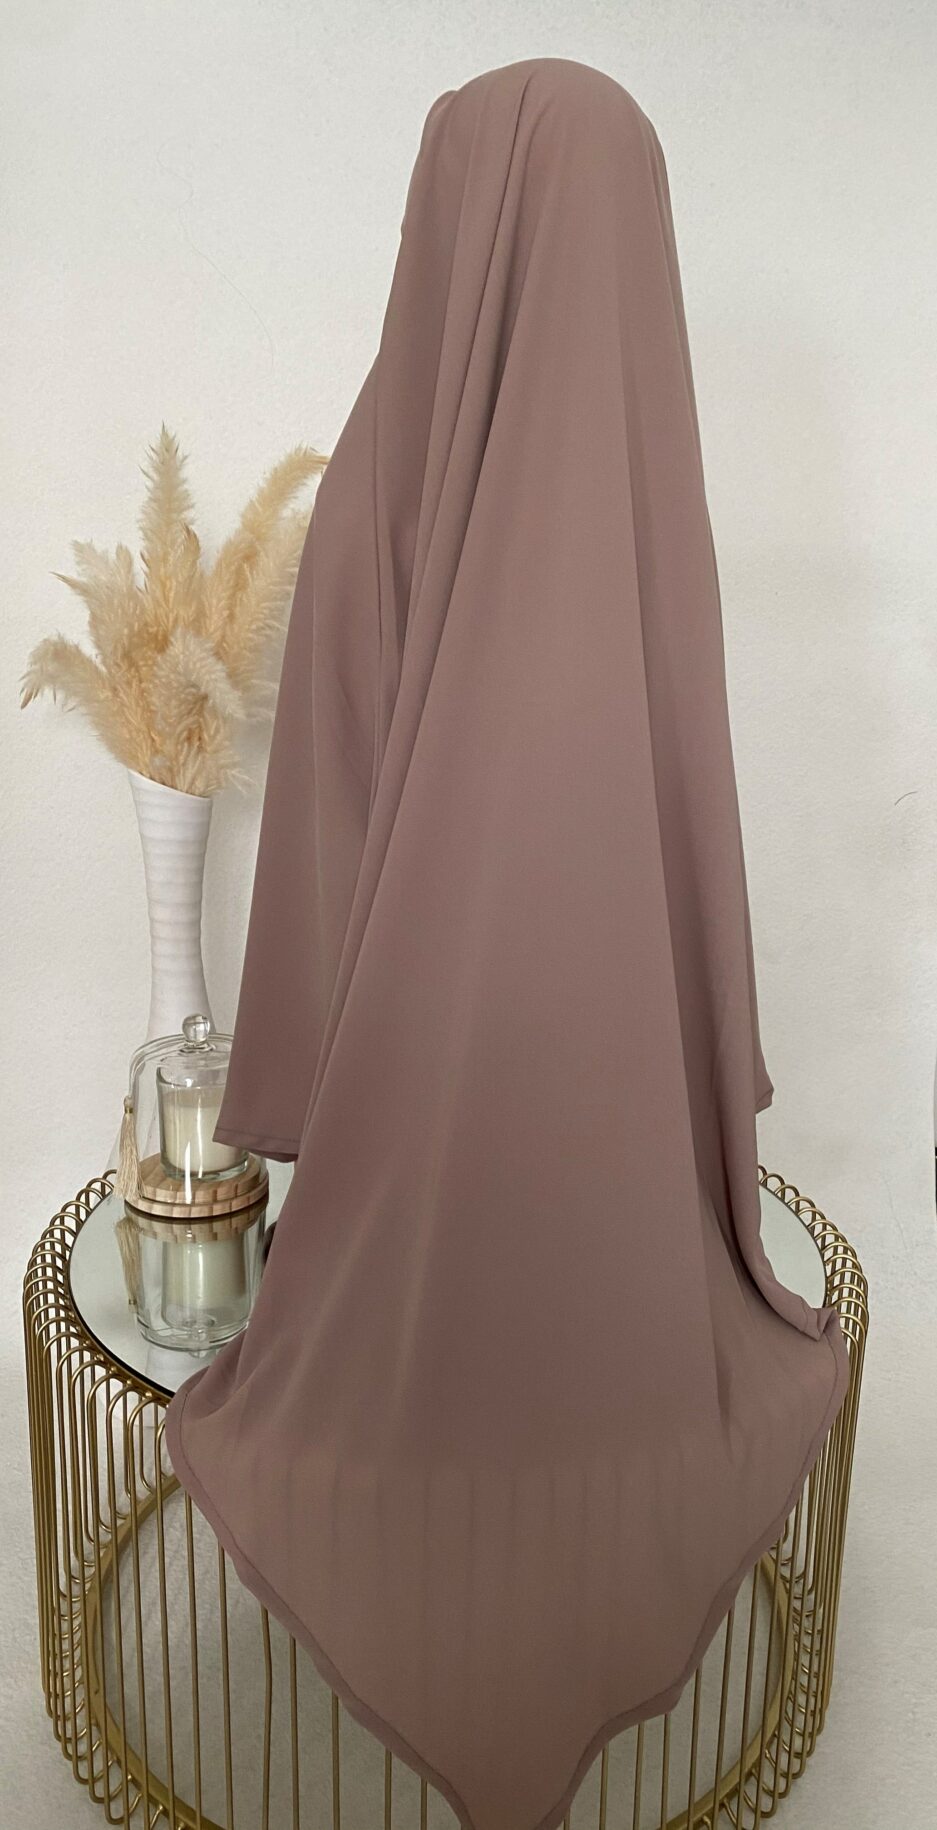 Khimar vieux rose, long hijab pour la femme musulmane voilée, Cendrijab vend en ligne des khimar de bonne qualité et pas cher, la livraison est rapide , Cendrijab propose un large choix de couleurs, vente de khimar en gros et au détails, notre stock est disponible en France